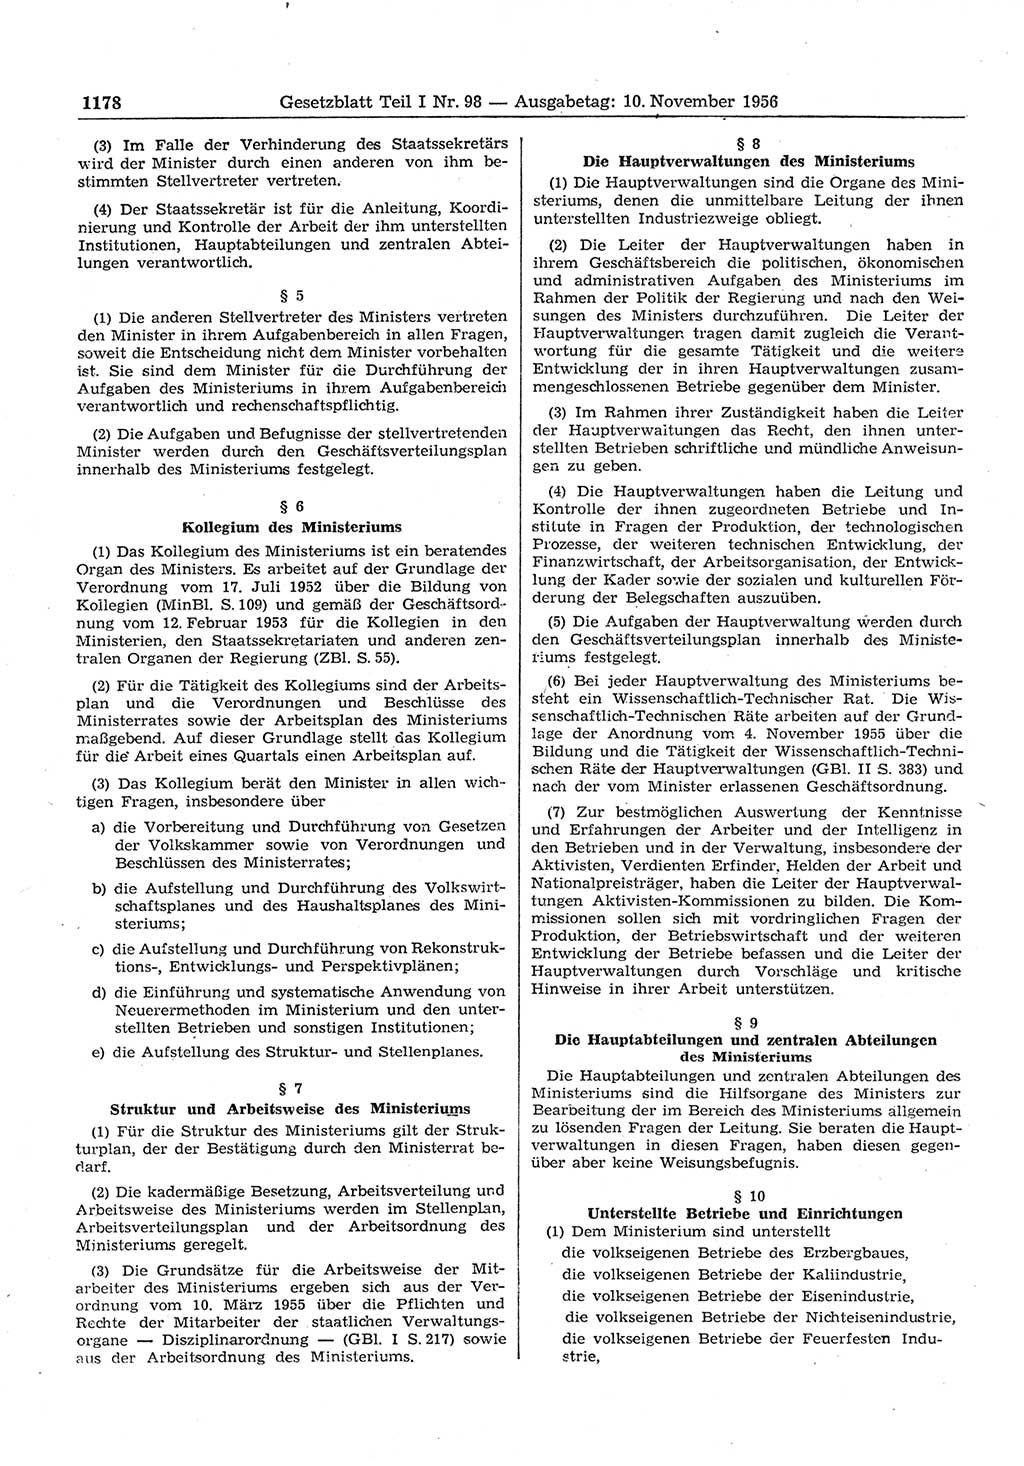 Gesetzblatt (GBl.) der Deutschen Demokratischen Republik (DDR) Teil Ⅰ 1956, Seite 1178 (GBl. DDR Ⅰ 1956, S. 1178)